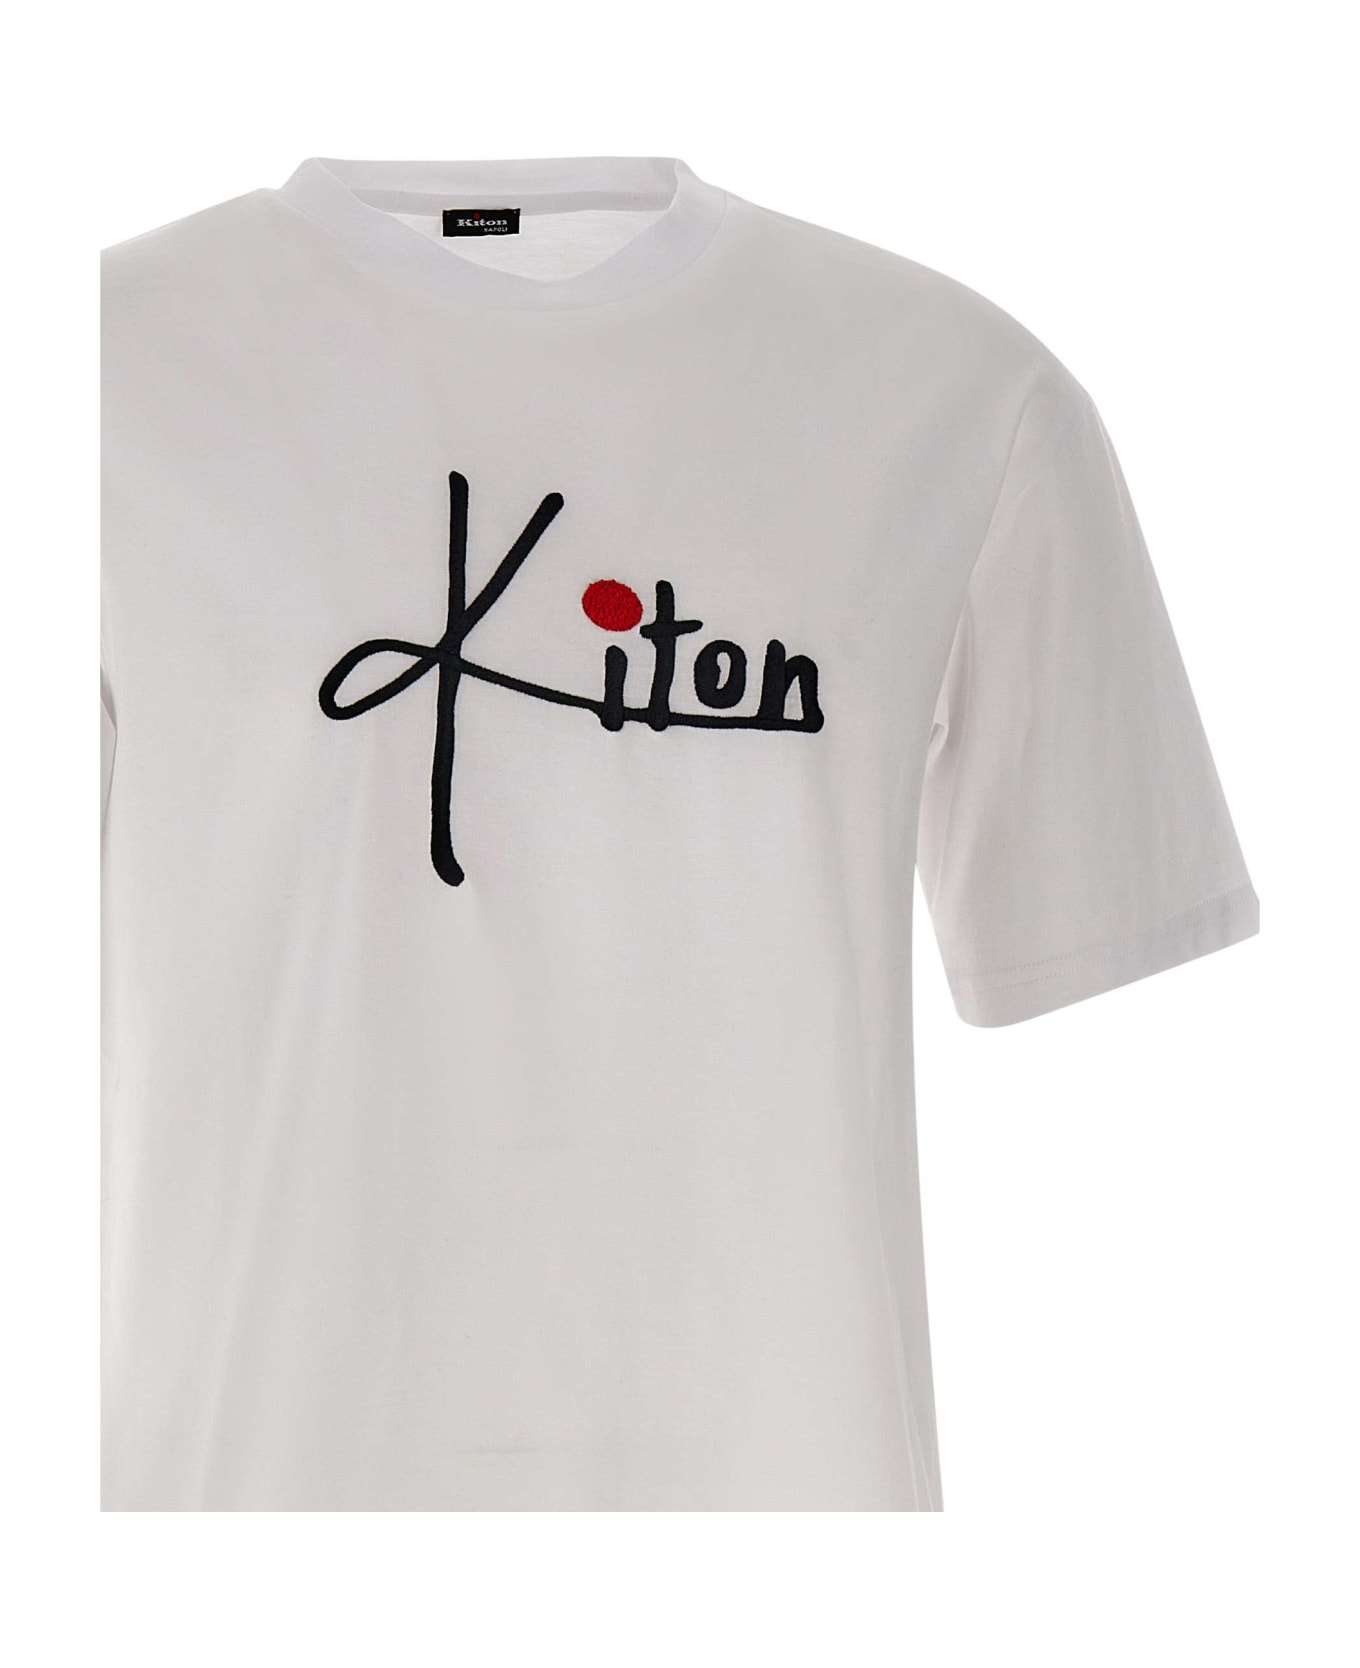 Kiton Cotton T-shirt - WHITE シャツ